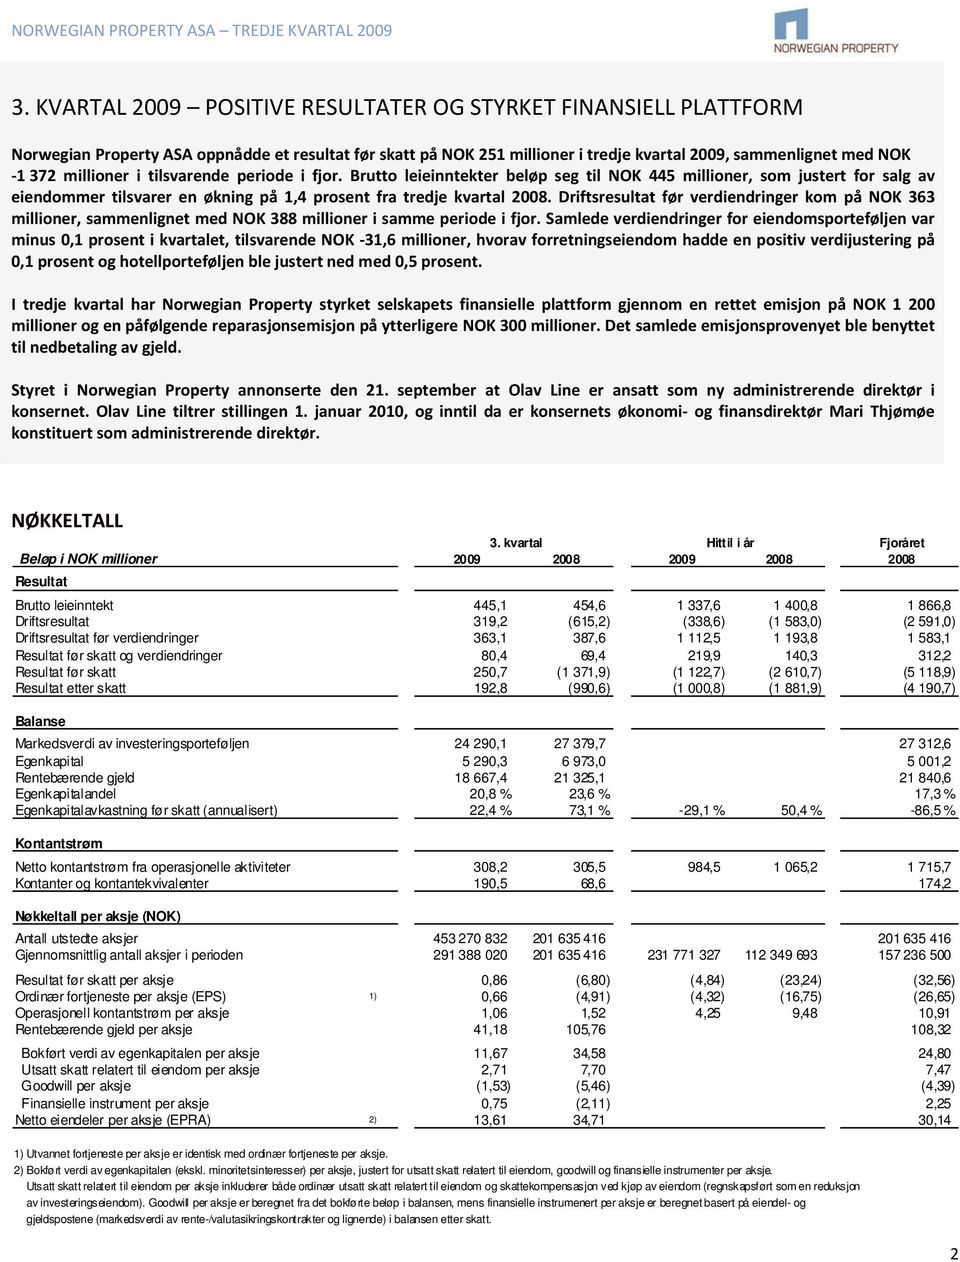 Driftsresultat før verdiendringer kom på NOK 363 millioner, sammenlignet med NOK 388 millioner i samme periode i fjor.